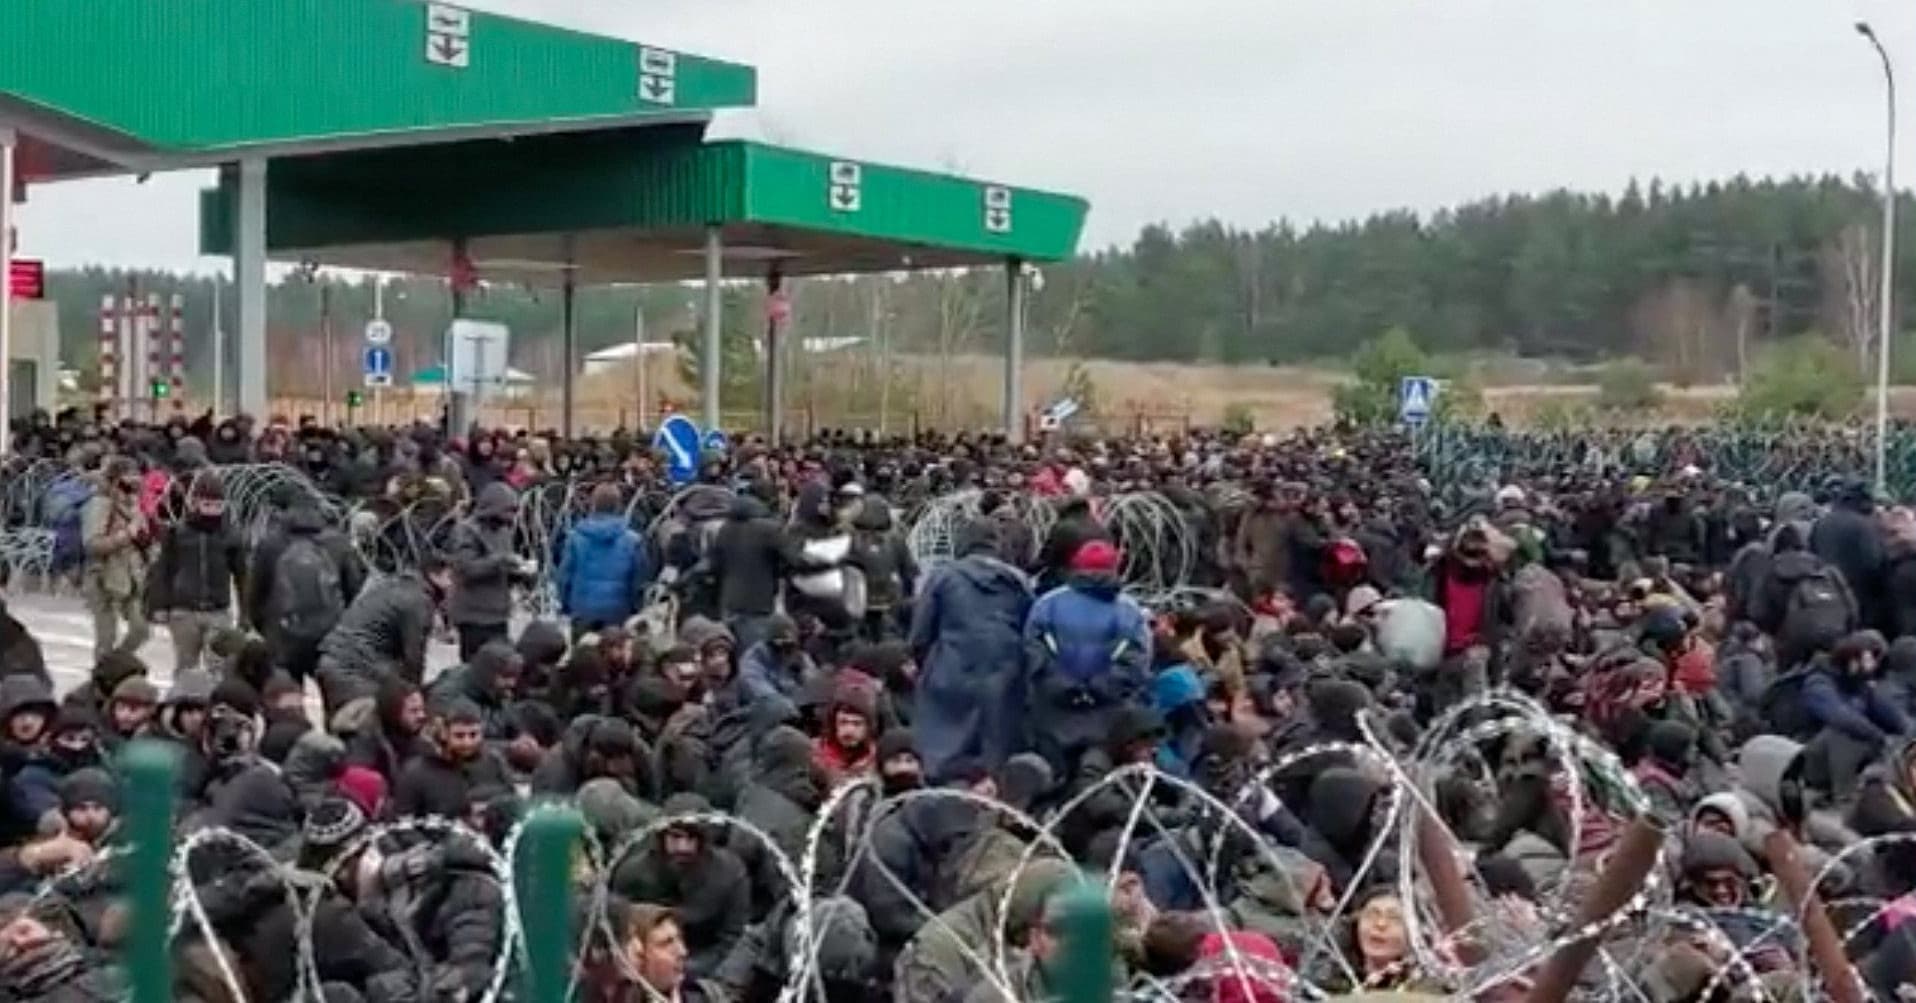 Ylen kirjeenvaihtaja kertoo Valko-Venäjän pakottaneen siirtolaisia rajanylityspaikalle, Brysselistä on tulossa pakotteita – lue Puolan rajakriisin tuoreet käänteet